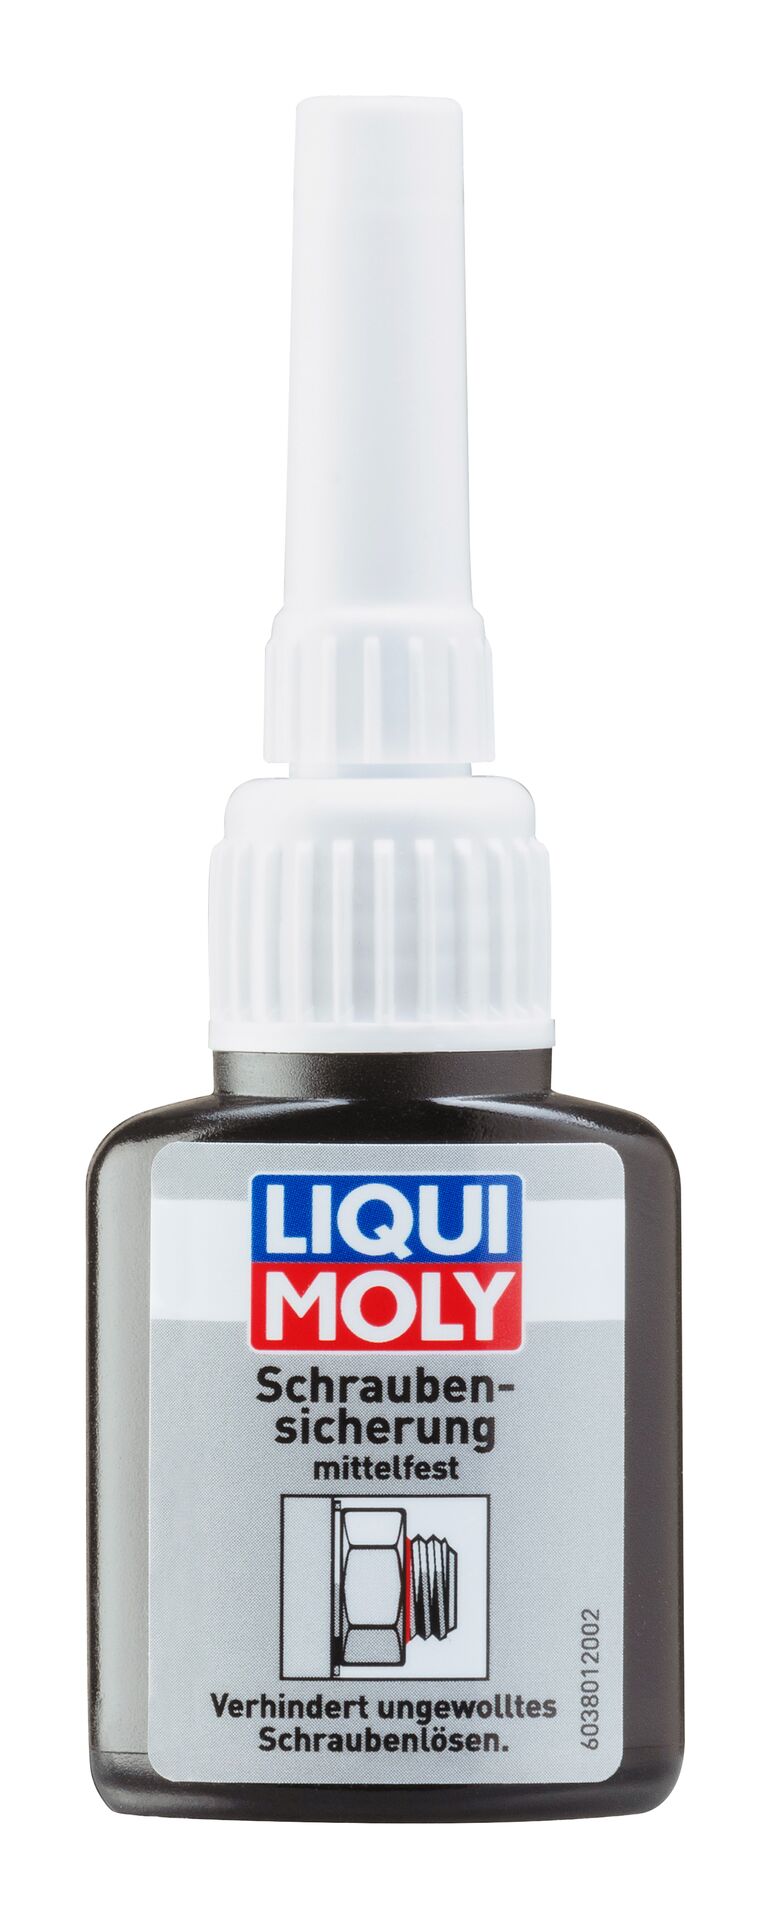 Liqui Moly Schrauben-Sicherung mittelfest Scherungslack Schraubenkleber 10 g